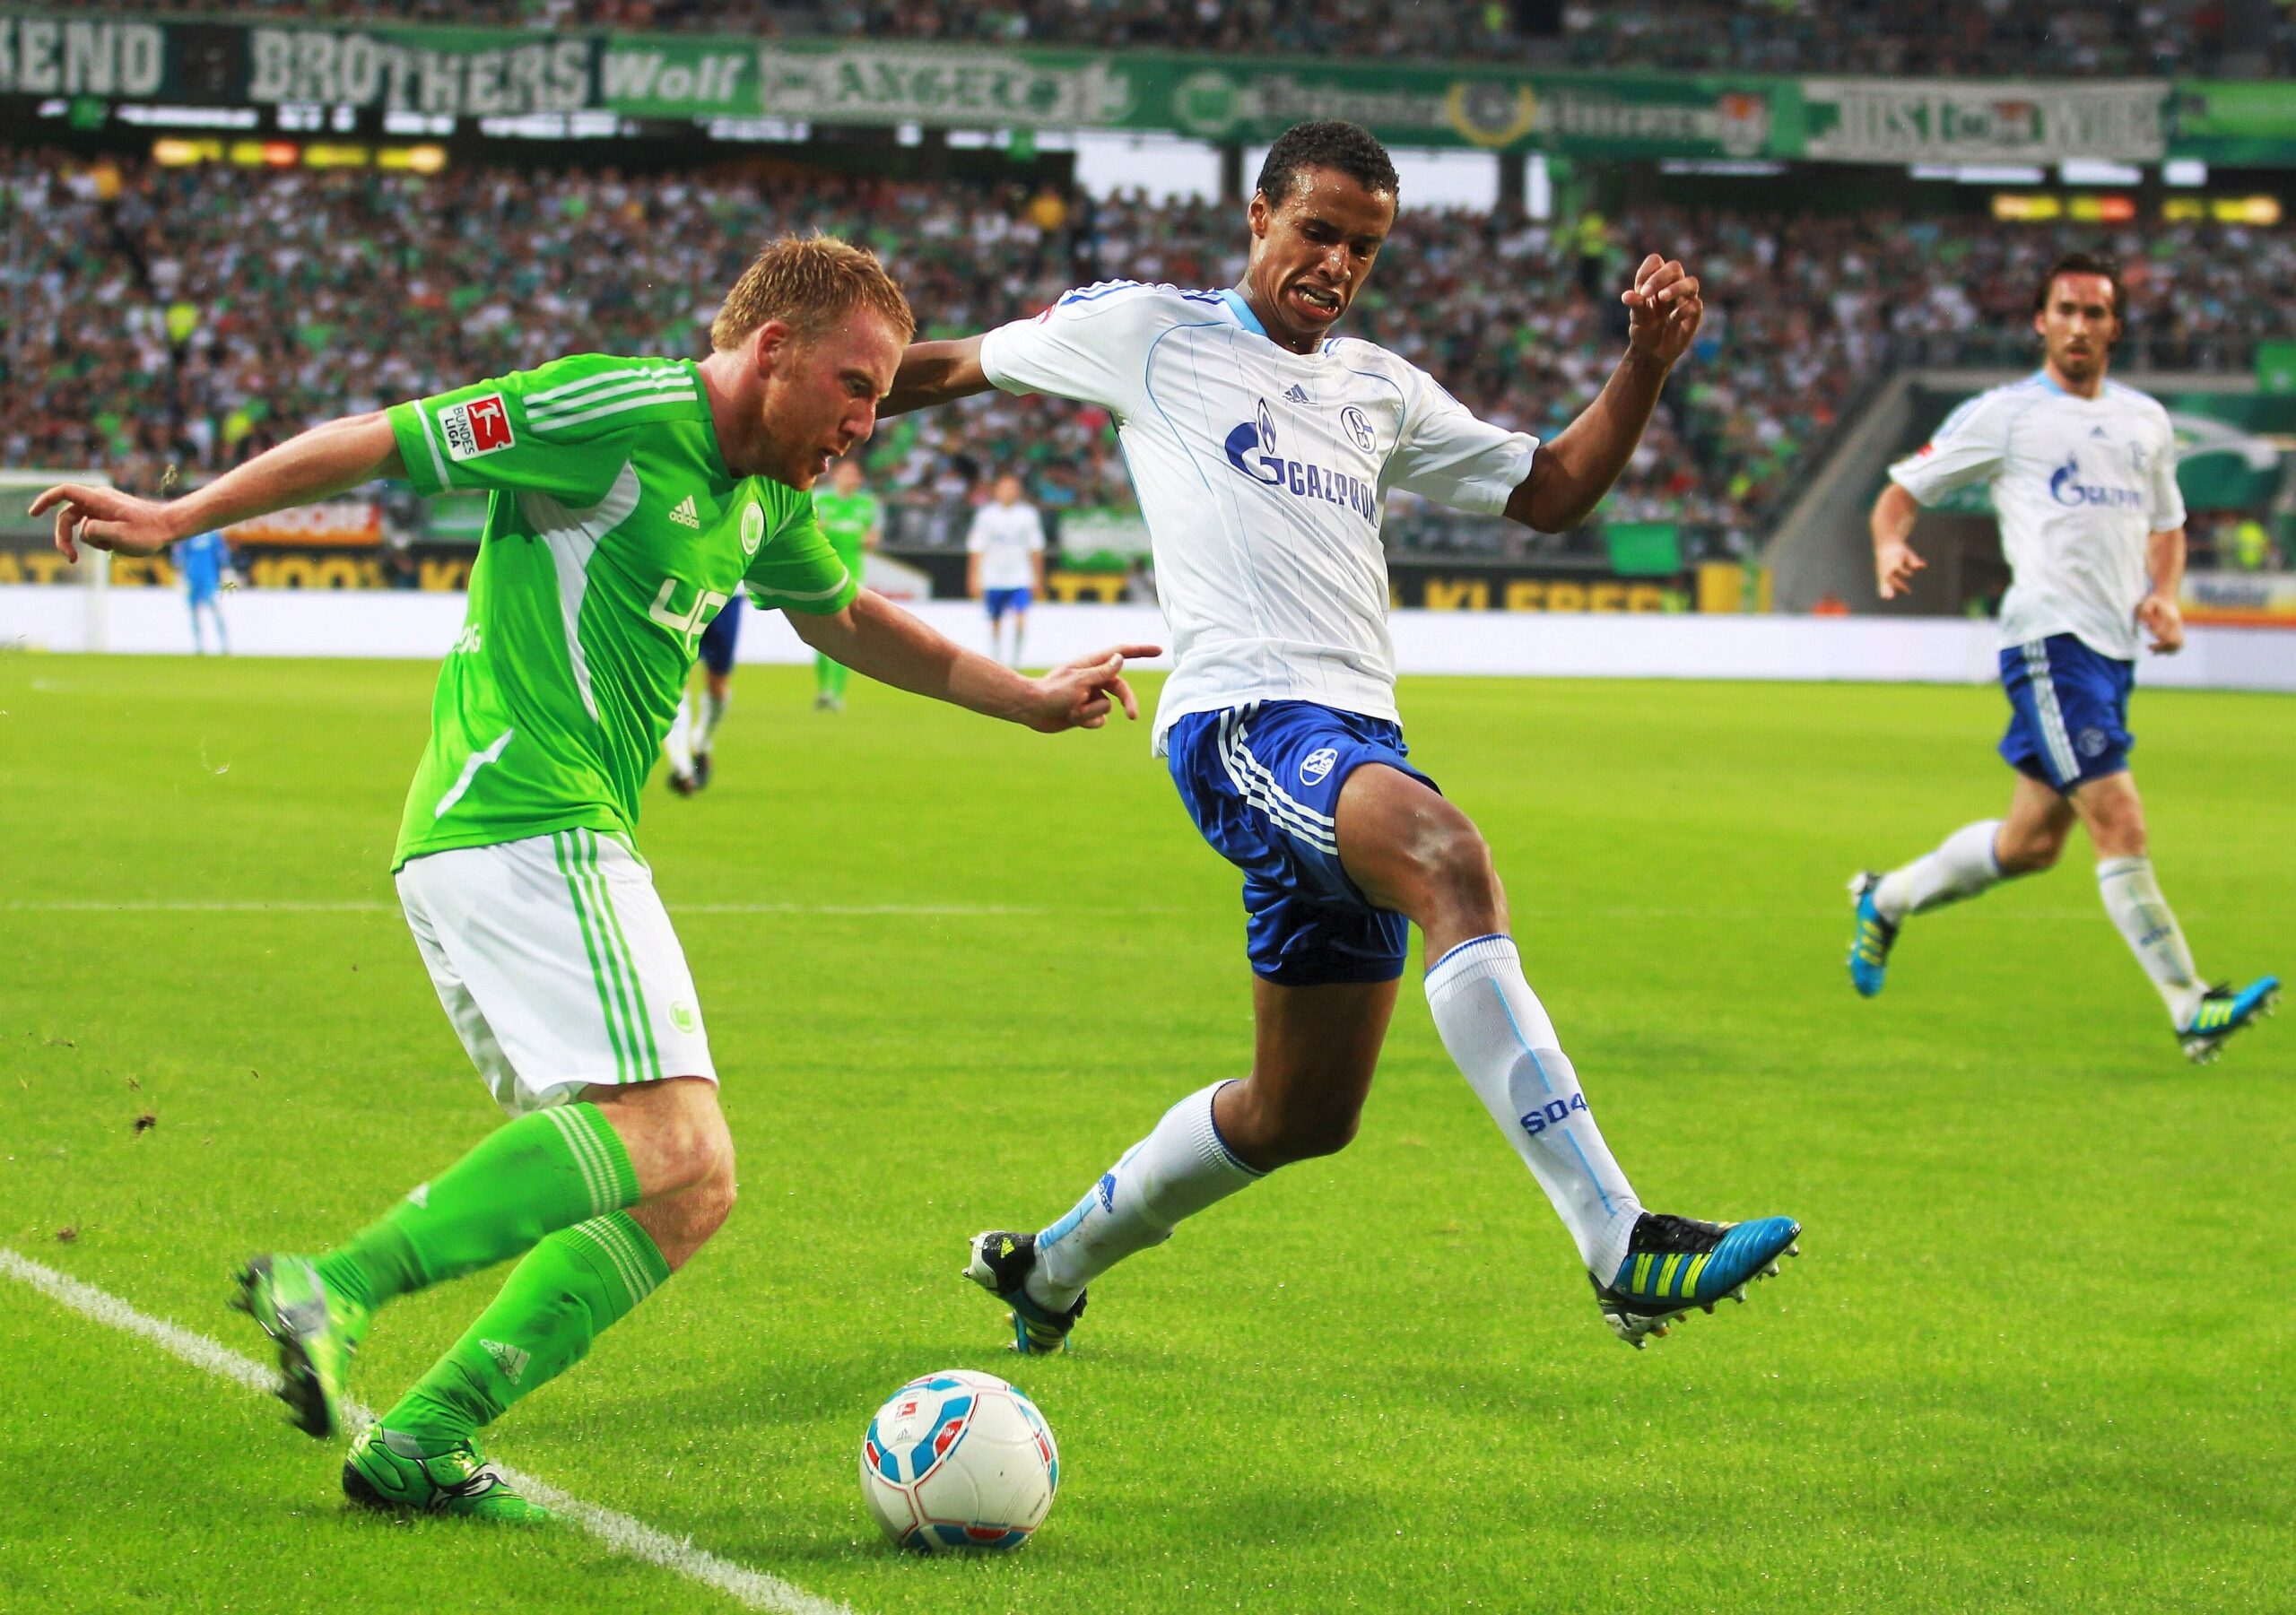 VfL Wolfsburg gegen Schalke 04, Endstand 2:1. Patrick Ochs gegen Joel Matip.